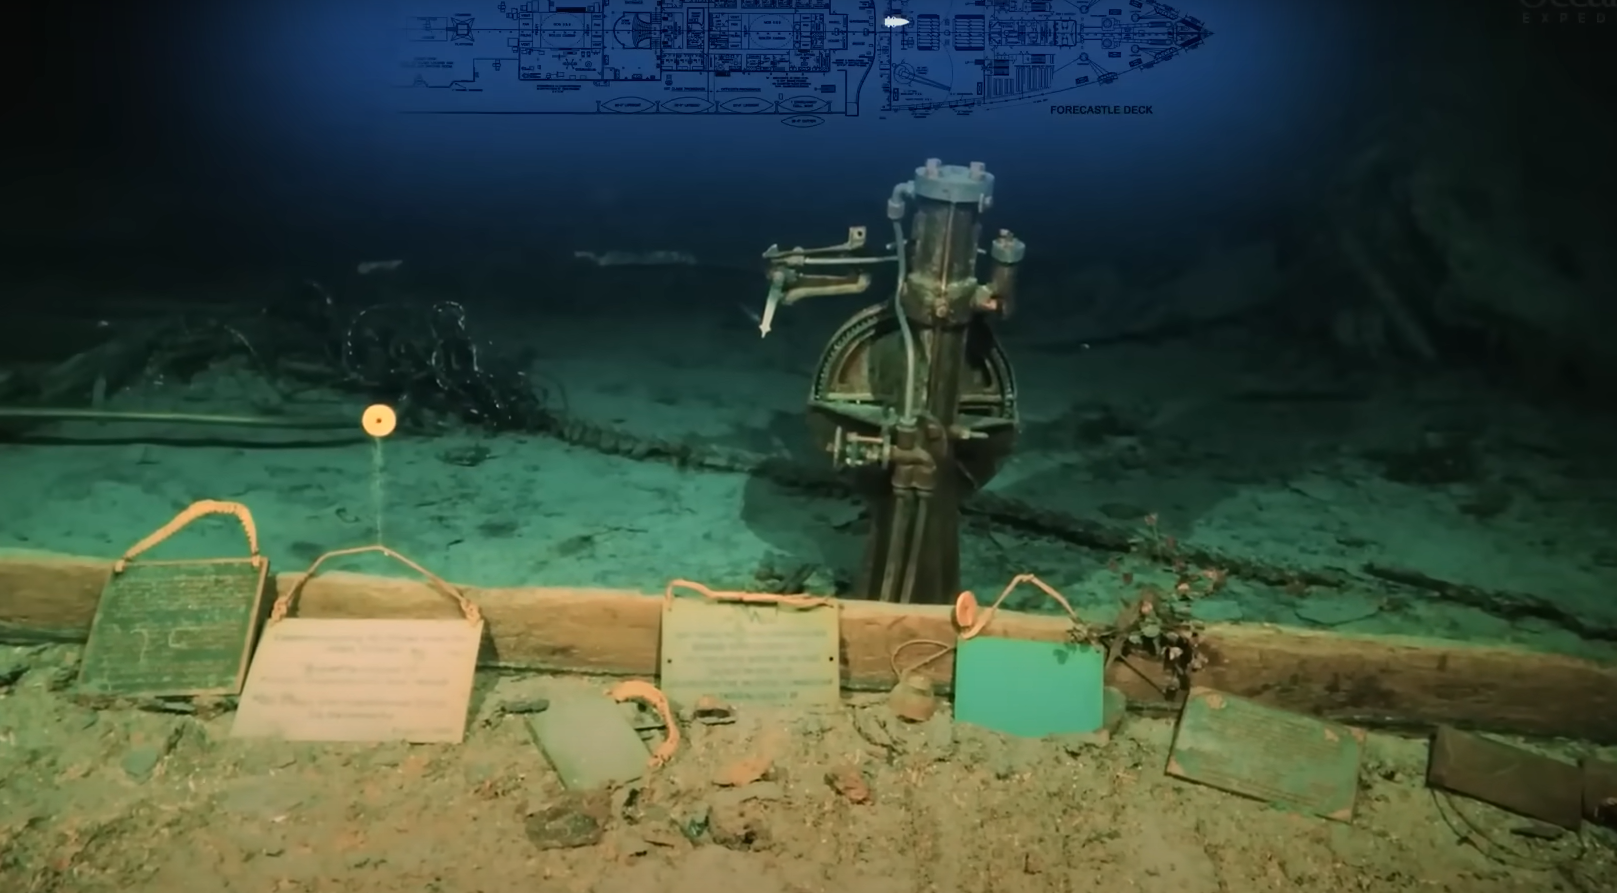 Cảnh hoang tàn của xác tàu Titanic ở độ sâu gần 4.000m dưới đại dương - Ảnh 8.